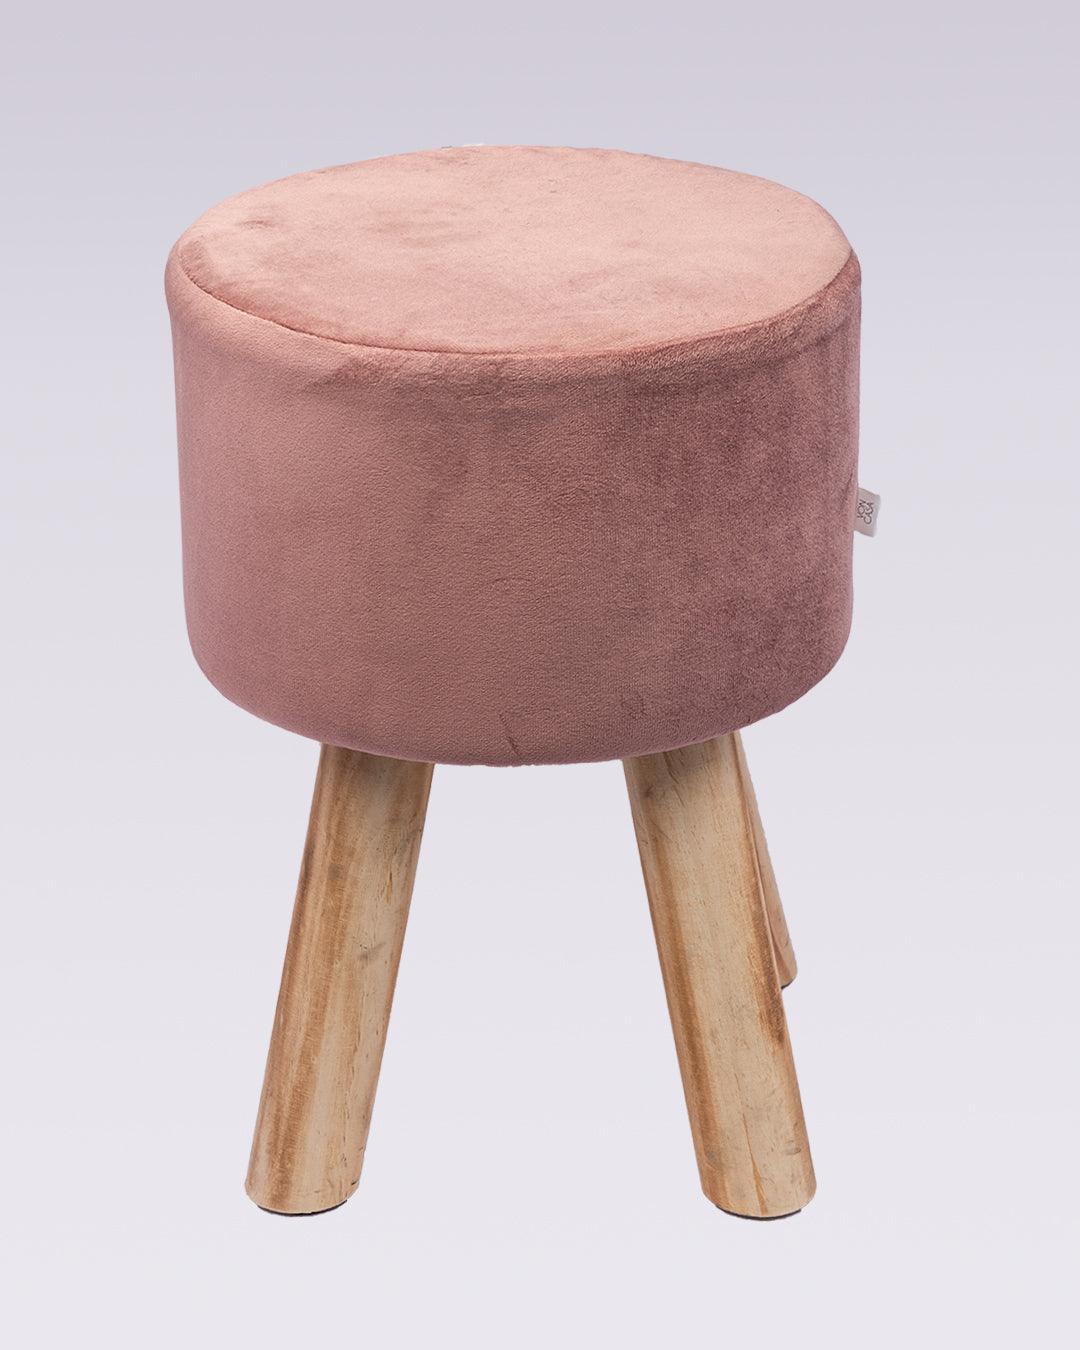 Market99 Four Legged Wooden Footstool, Ottoman, Rose Gold, Velvet, Wood - MARKET 99